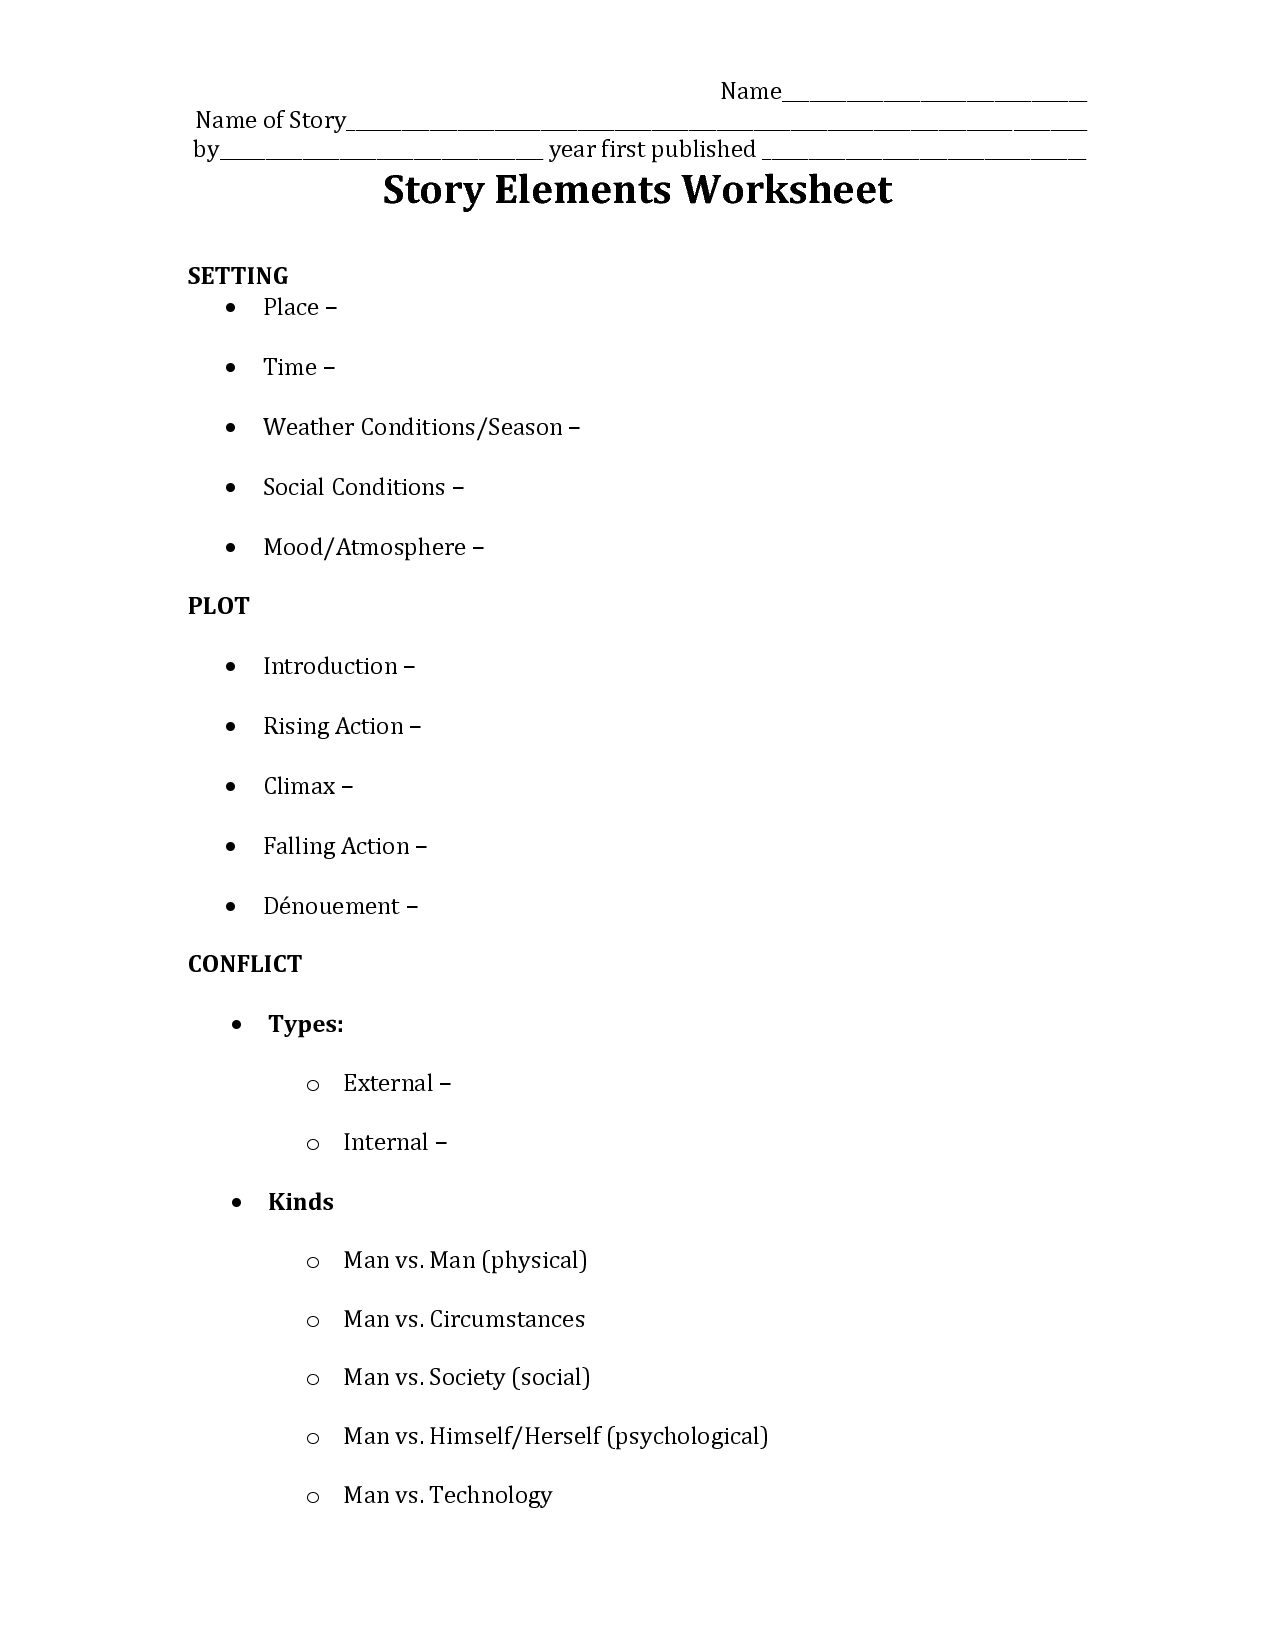 Setting Story Elements Worksheets Image